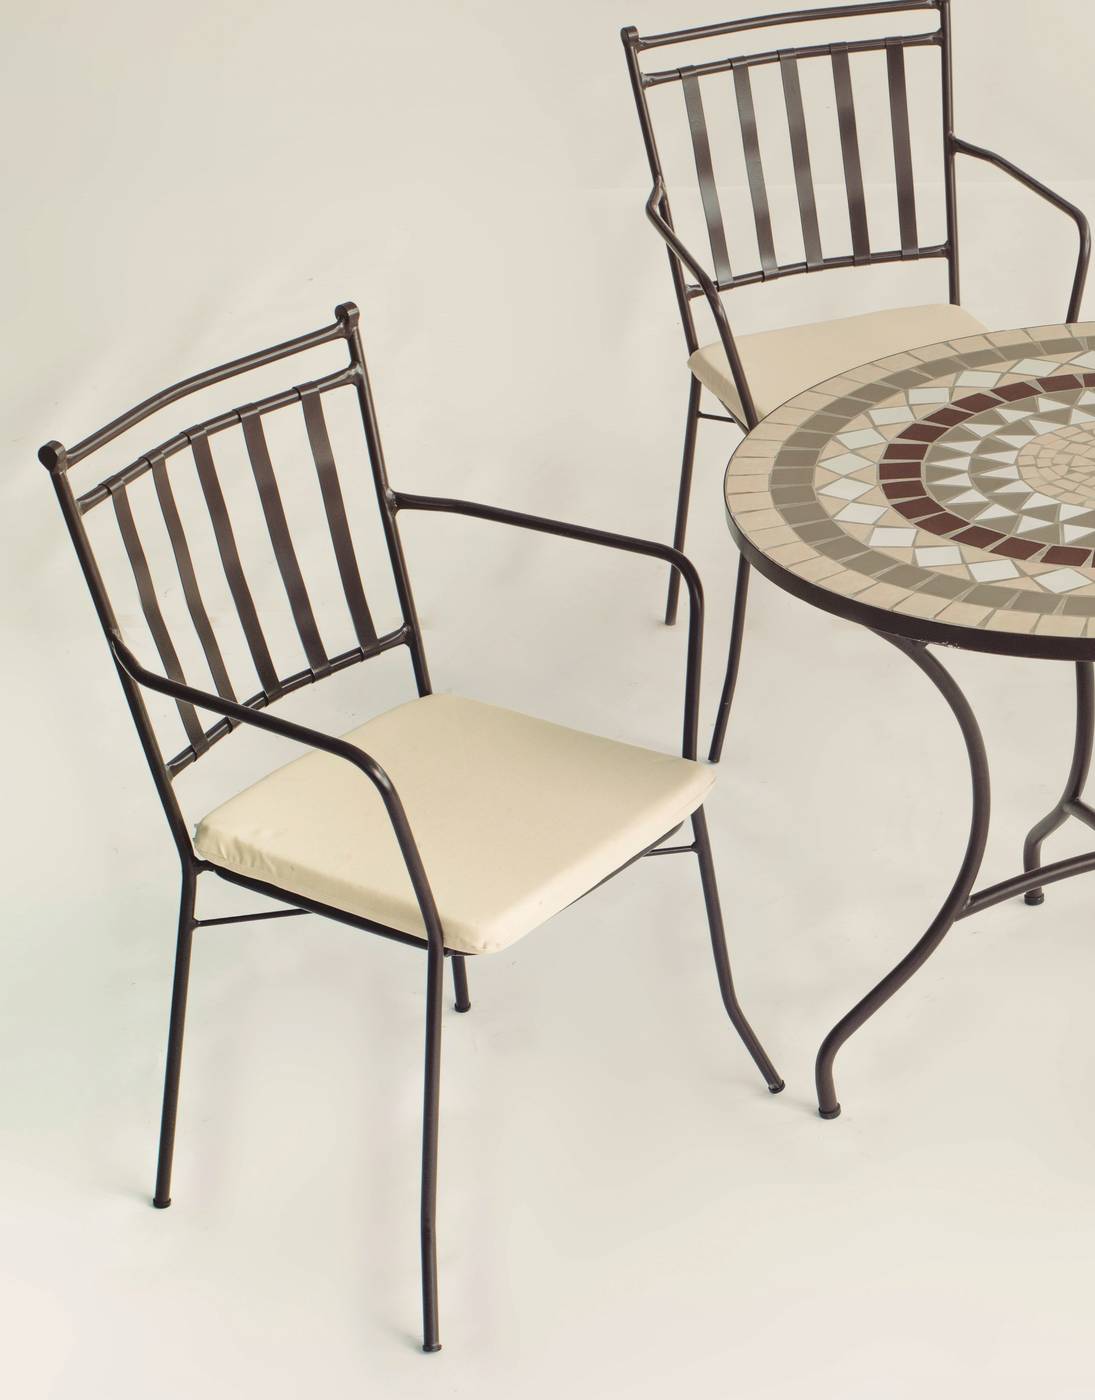 Conjunto Mosaico Malaya-Shifa - Conjunto de forja color bronce: mesa con tablero mosaico de 150 cm + 4 sillones con cojines asiento.